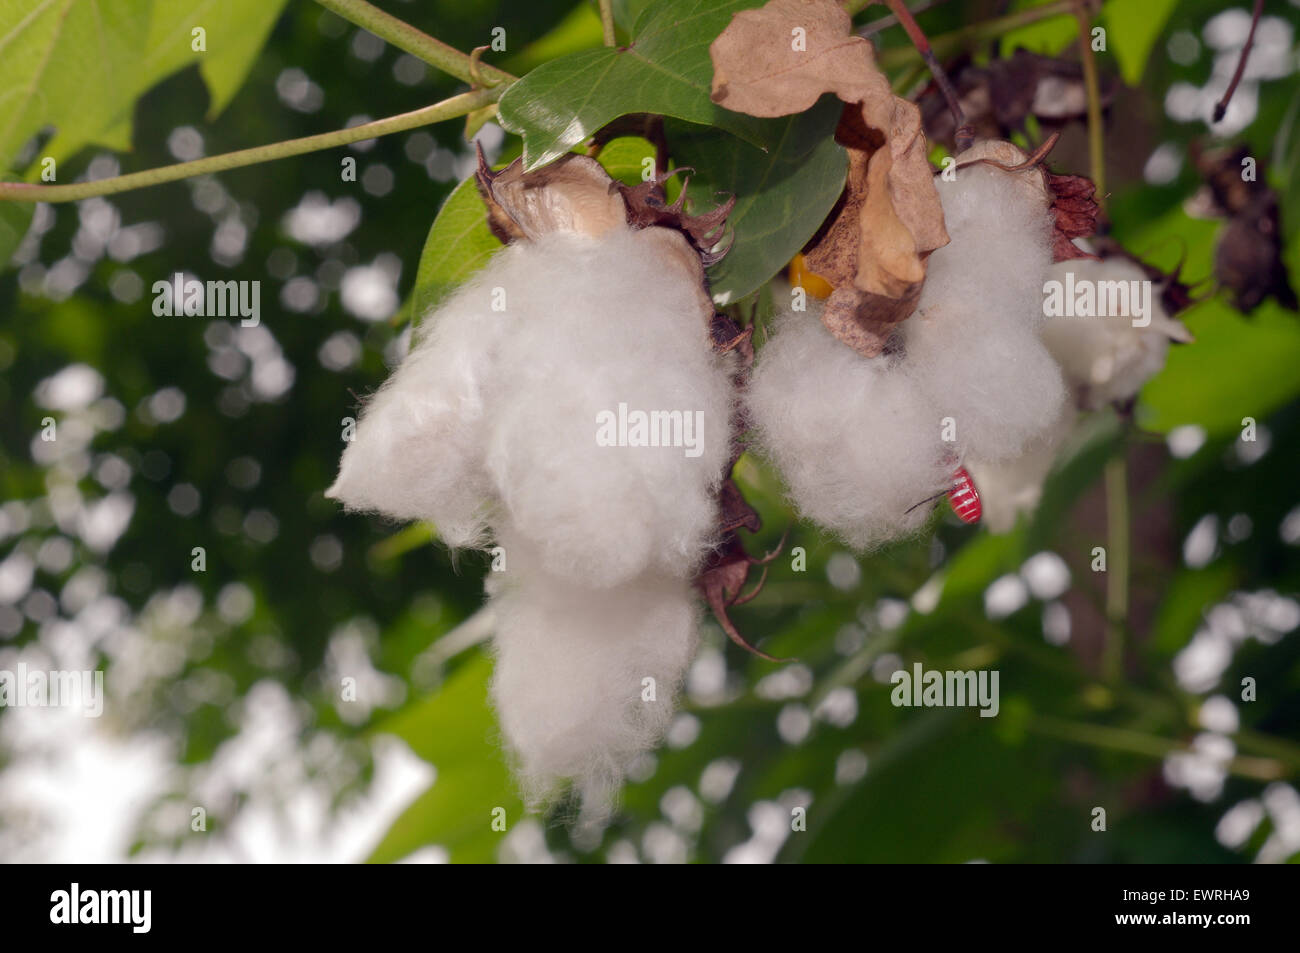 Boules de coton Prêt pour la récolte, province de Loei, Thaïlande Banque D'Images